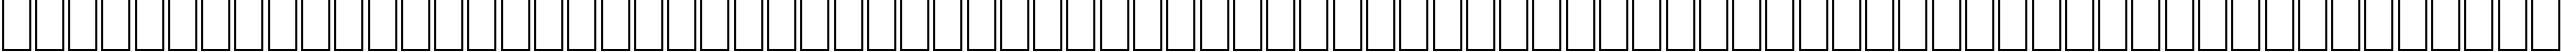 Пример написания английского алфавита шрифтом WP MathExtendedA